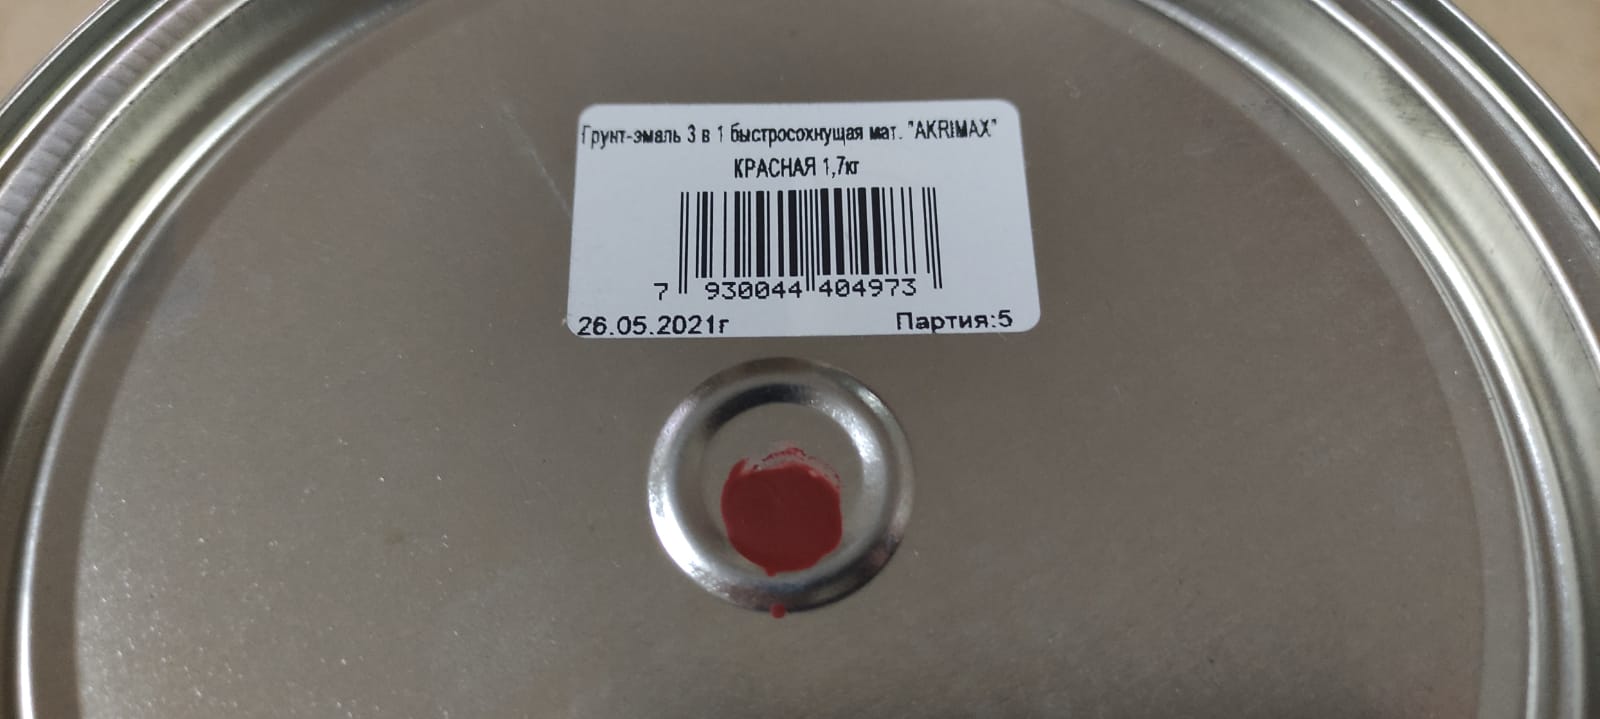 Грунт - эмаль по ржавчине 3 в1 быстросохнущая матовая Akrimax 1,7 кг (красная)